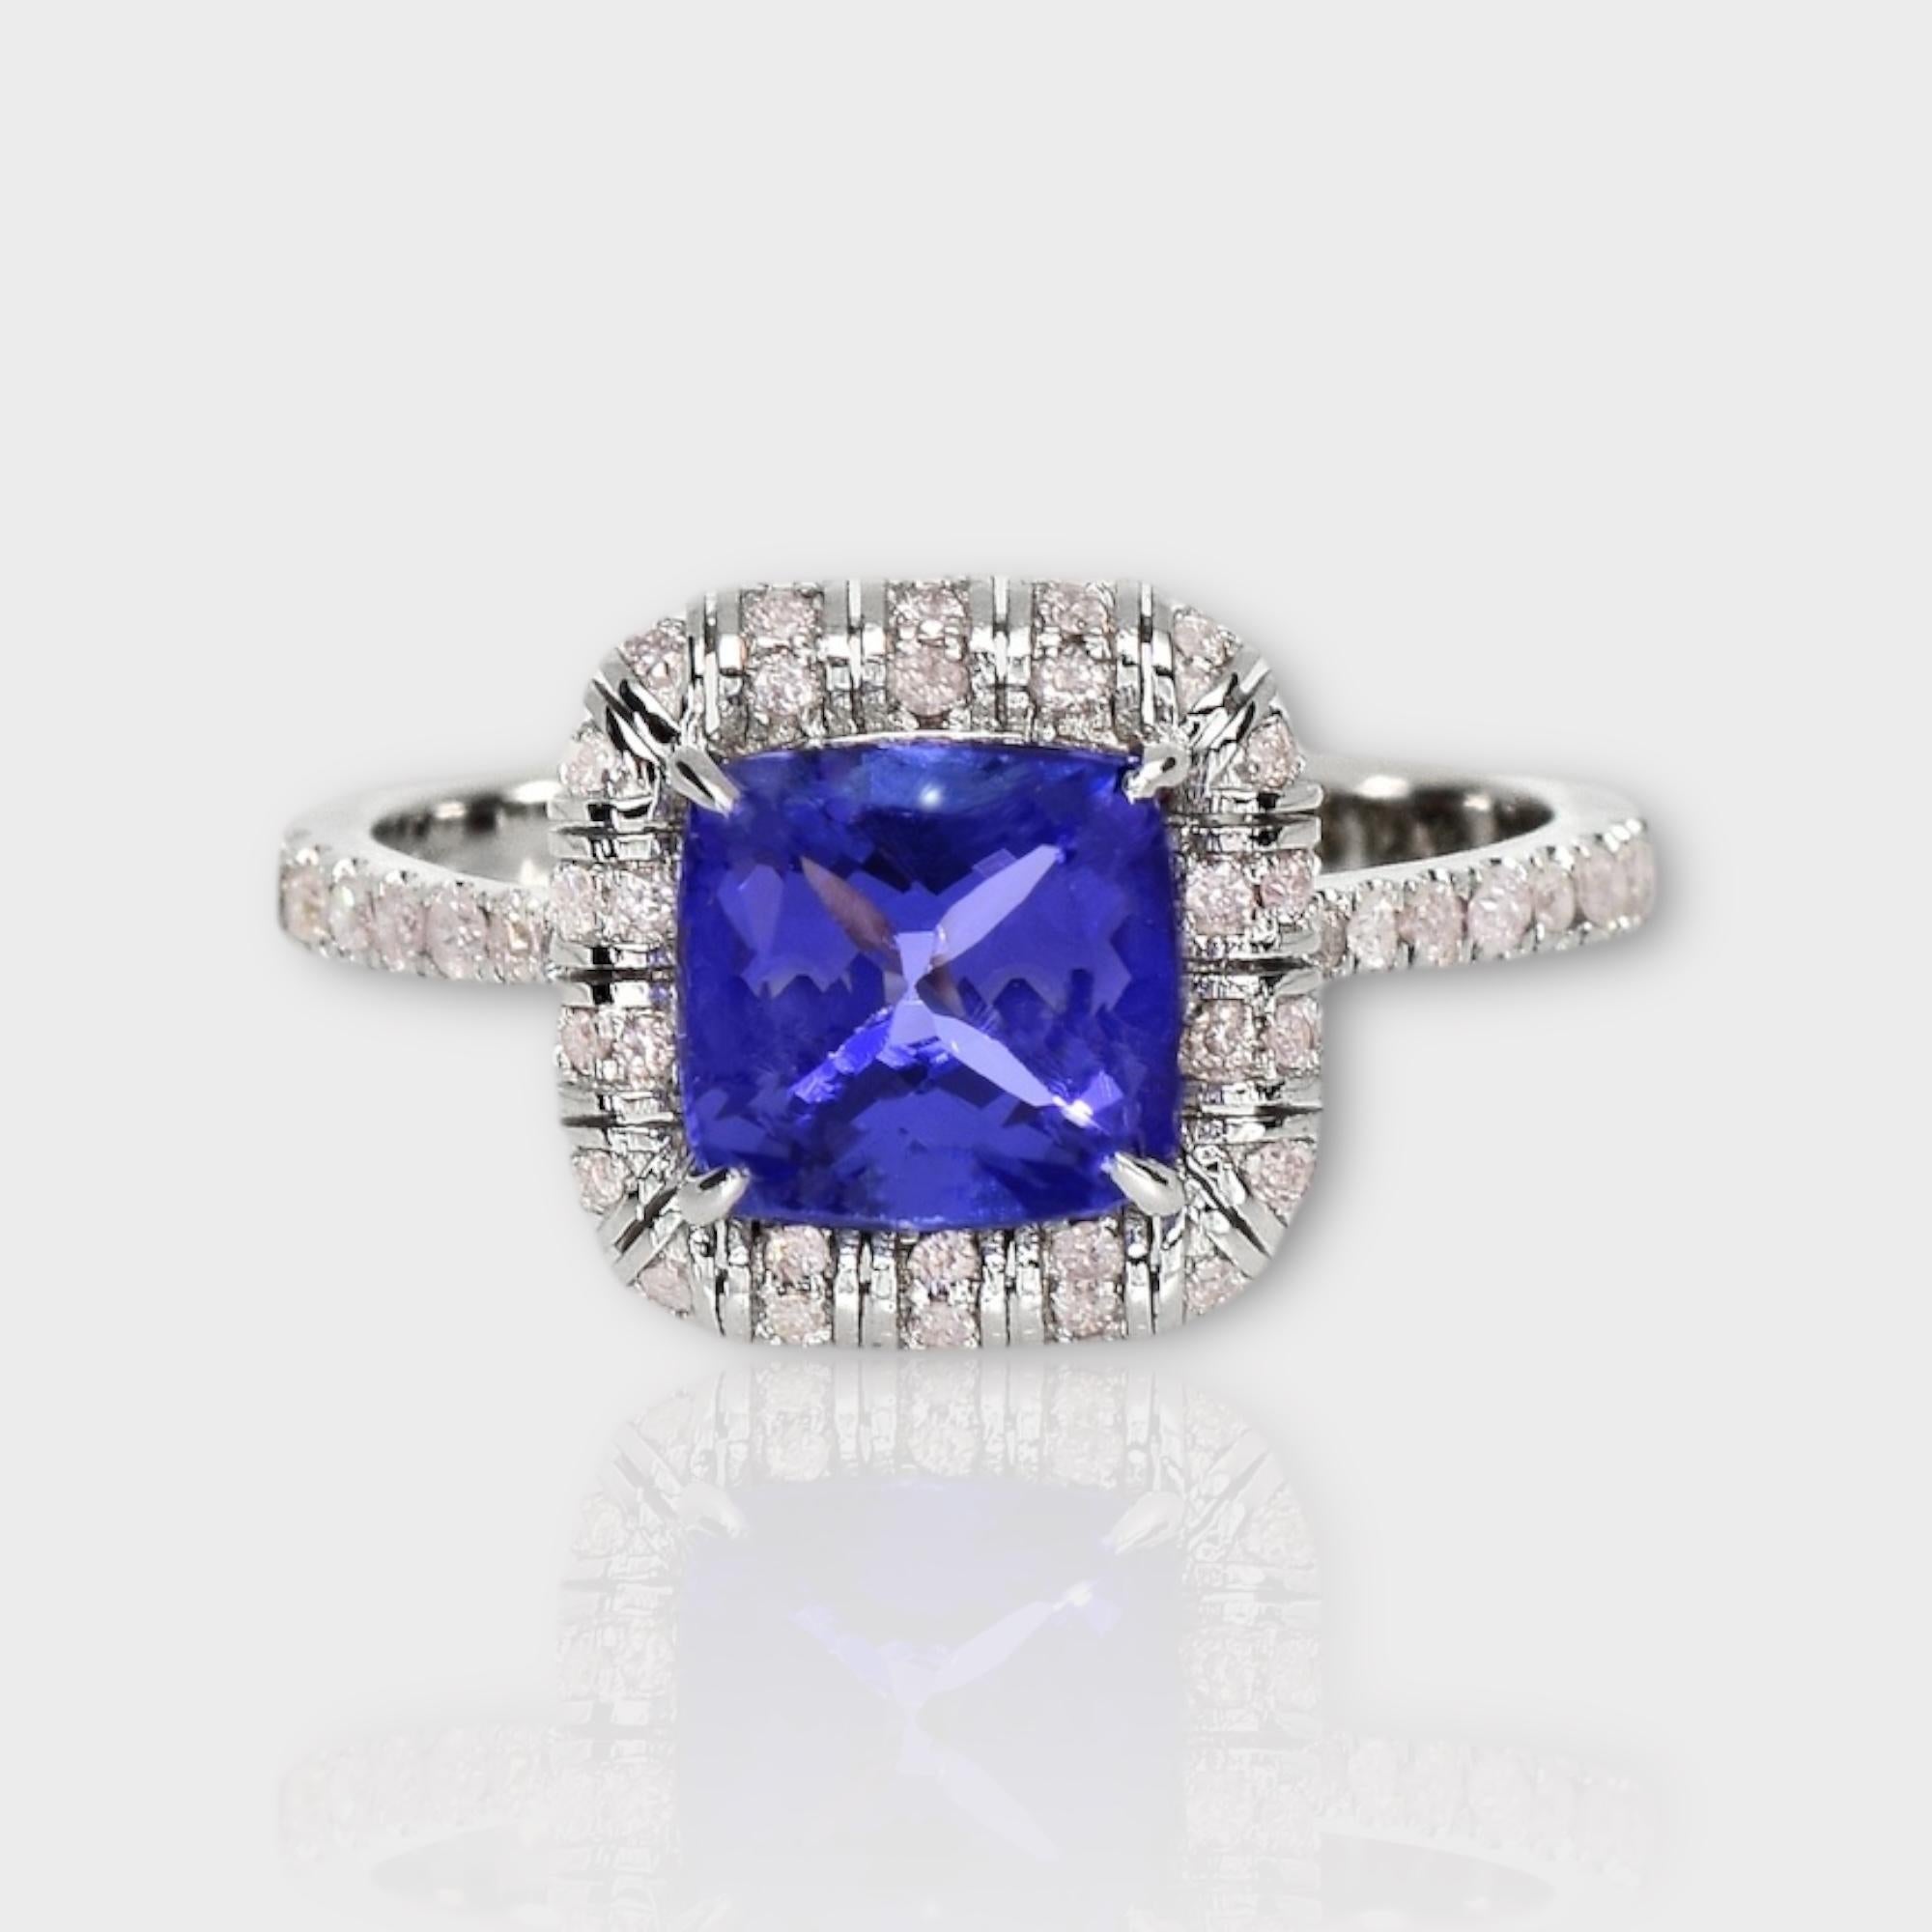 *IGI 14K 2.13 ct Tansanit&Rosa Diamant Antiker Art Deco Stil Verlobungsring*
Natürlicher bläulich-violetter Tansanit als Mittelstein mit einem Gewicht von 2,13 ct, umgeben von natürlichen rosafarbenen Diamanten mit einem Gewicht von 0,32 ct auf dem